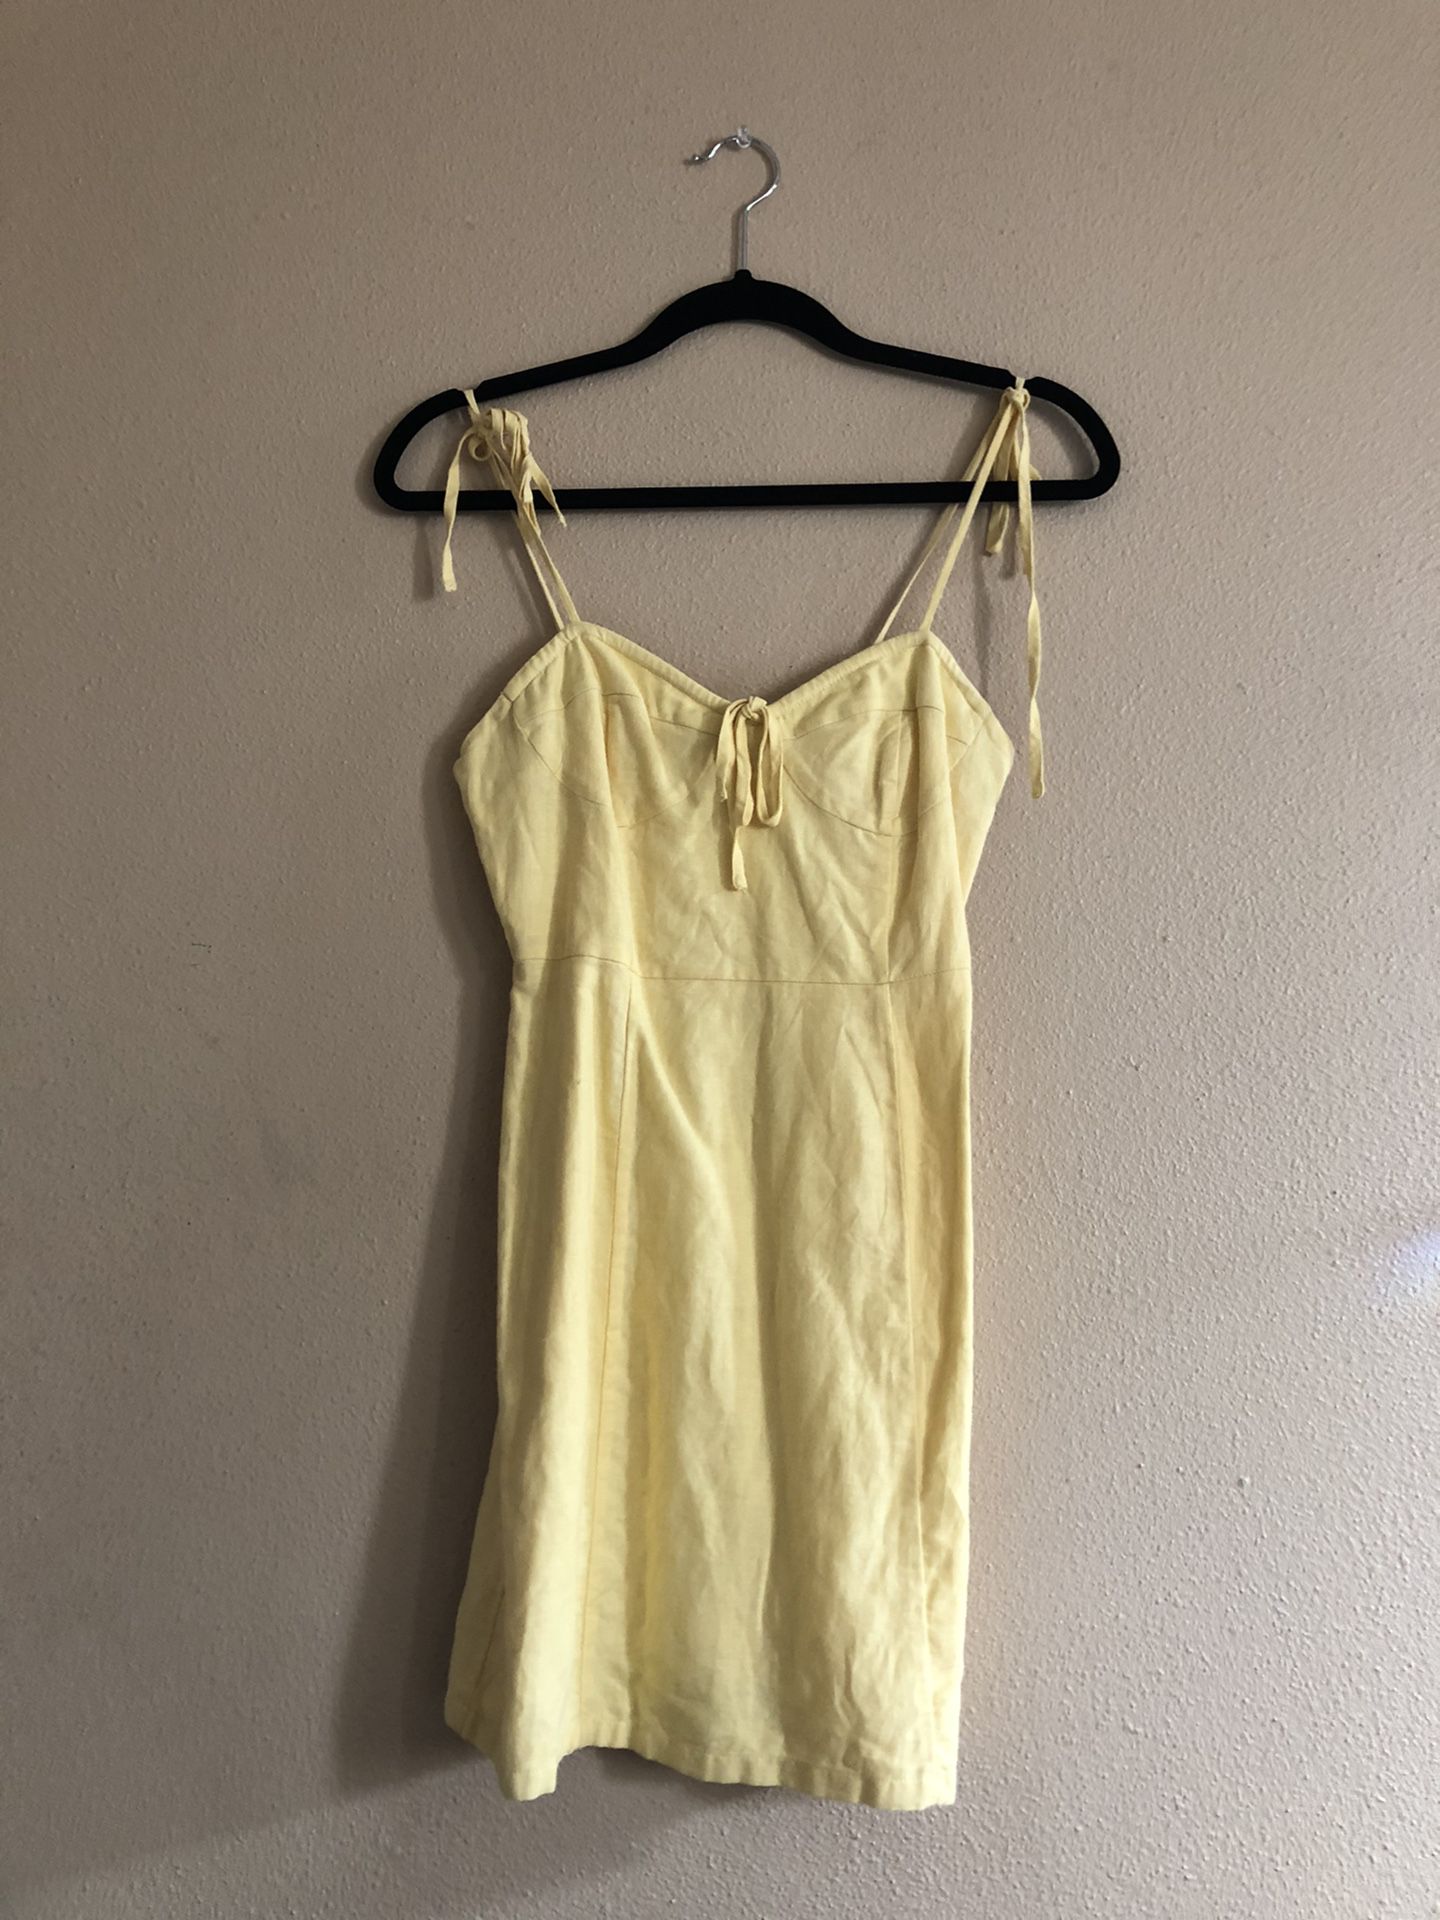 Yellow Dress size Small